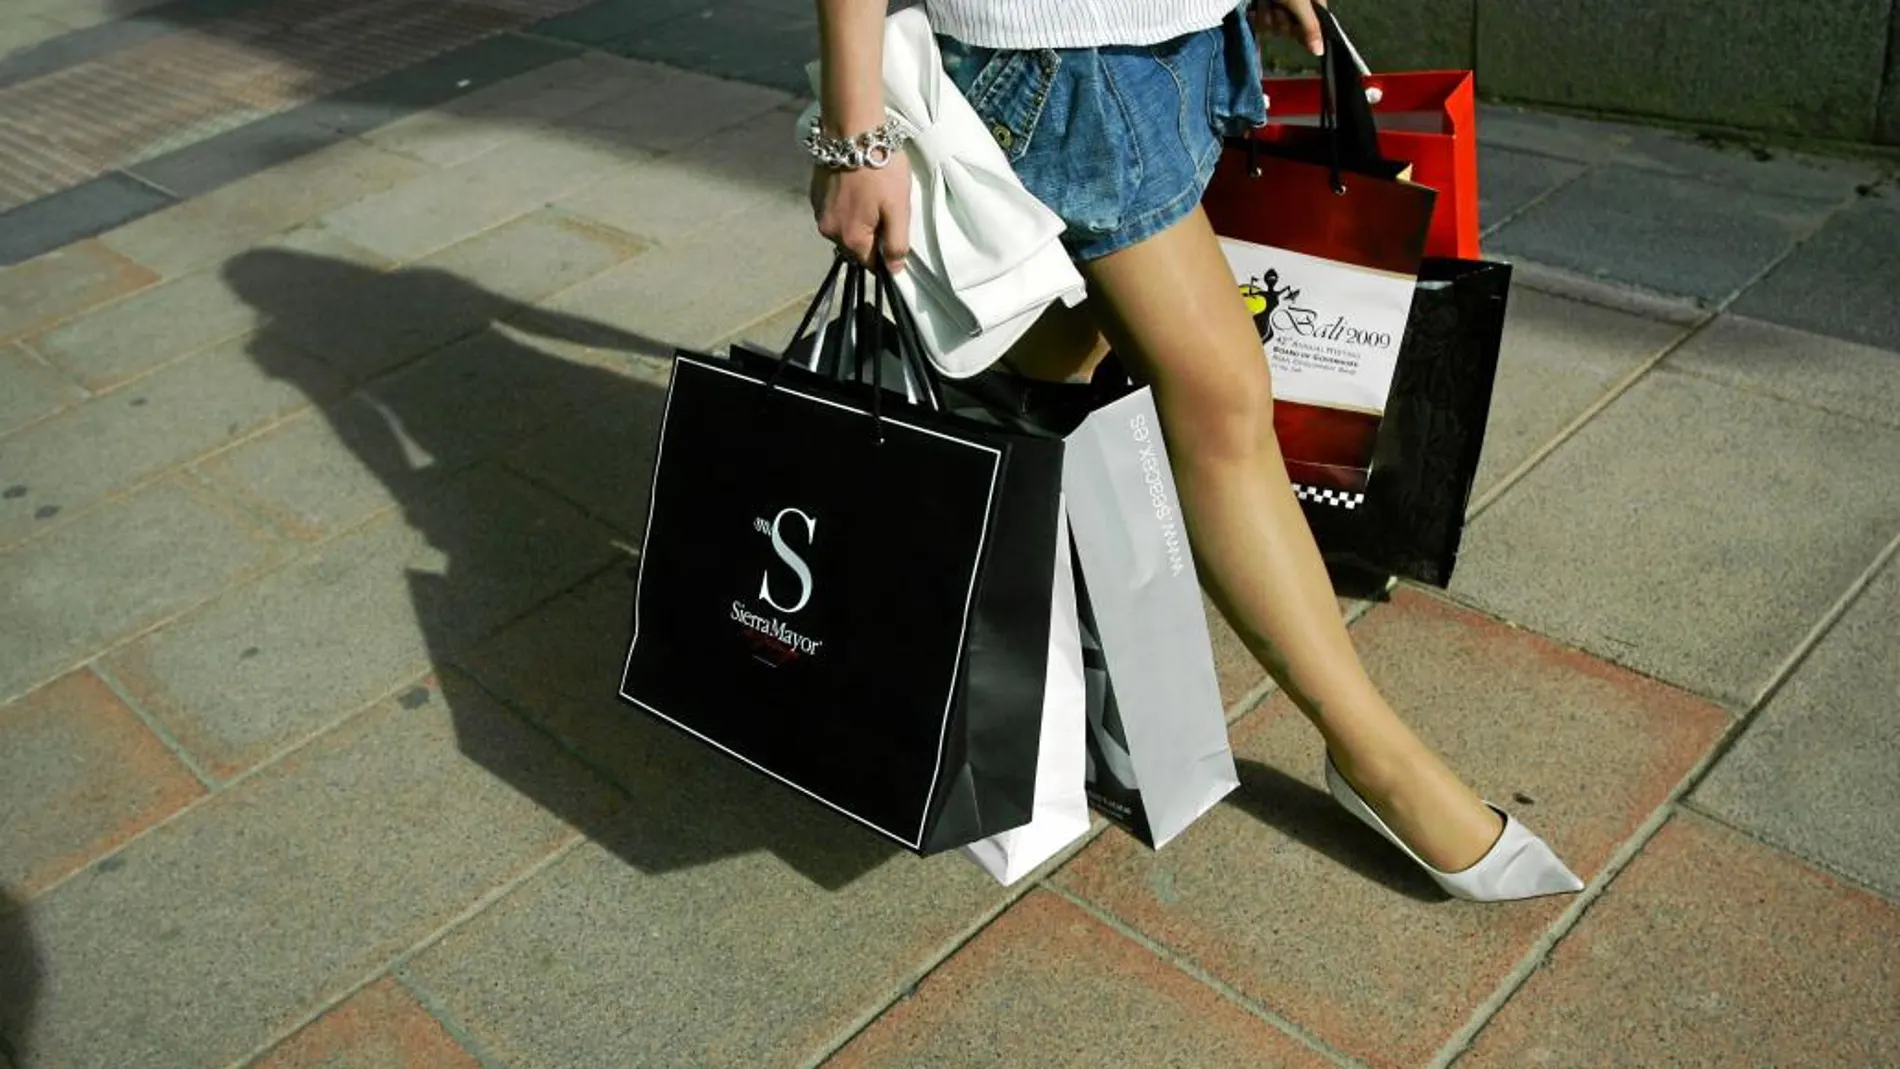 El mayor nivel de precios de la ropa se observó en Suecia (136%) y Dinamarca (131%).